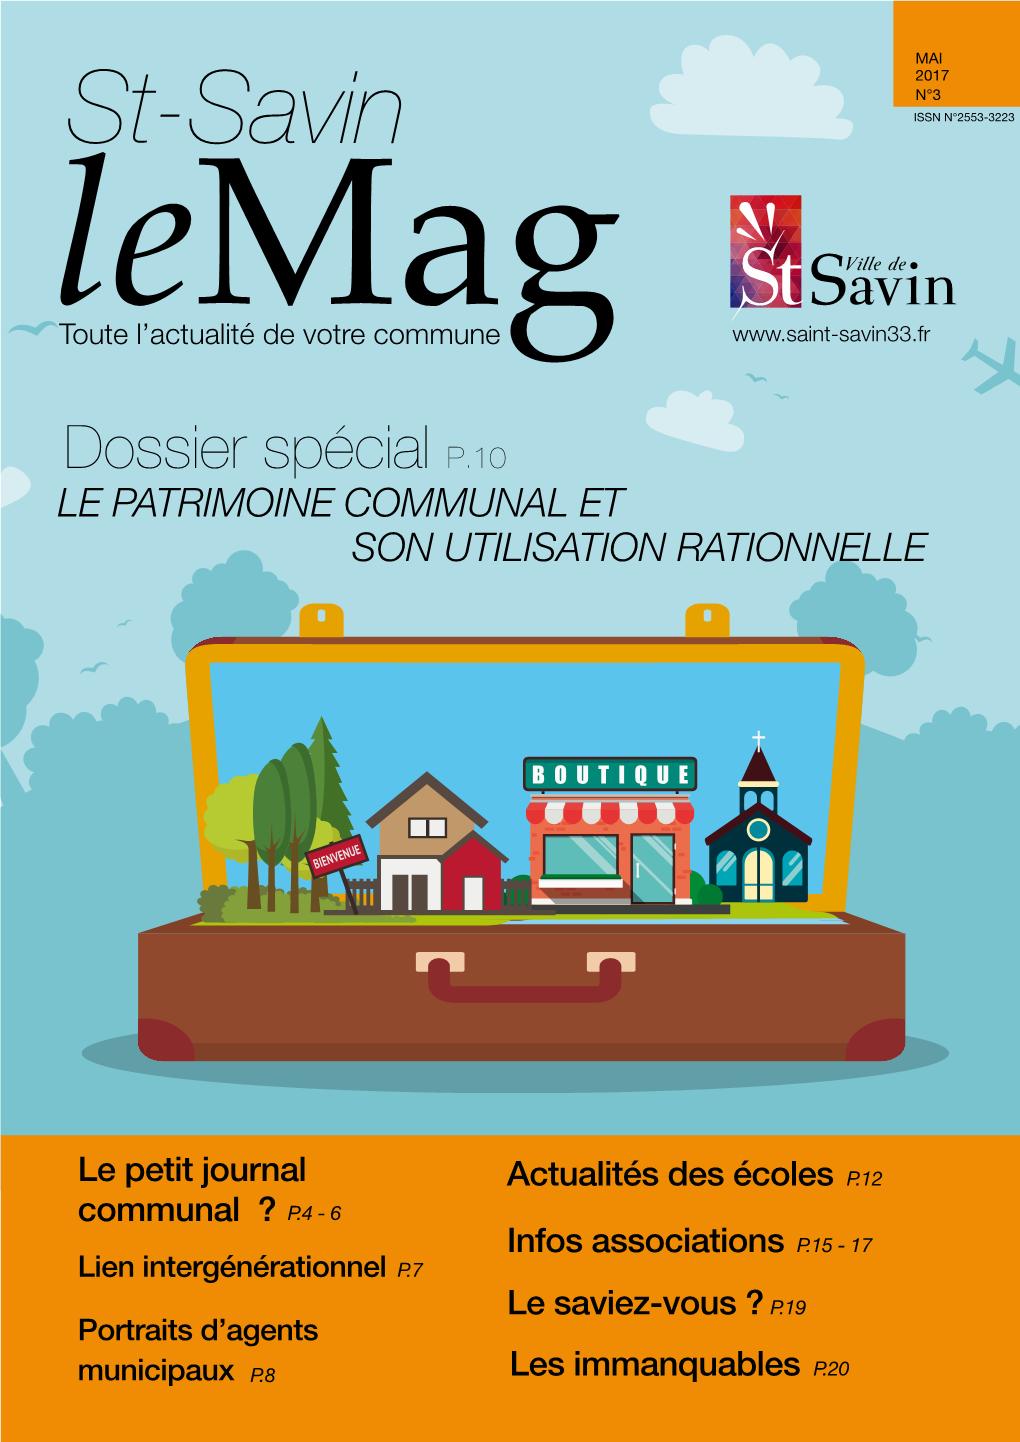 St-Savin ISSN N°2553-3223 Letoute L’Actualitémag De Votre Commune